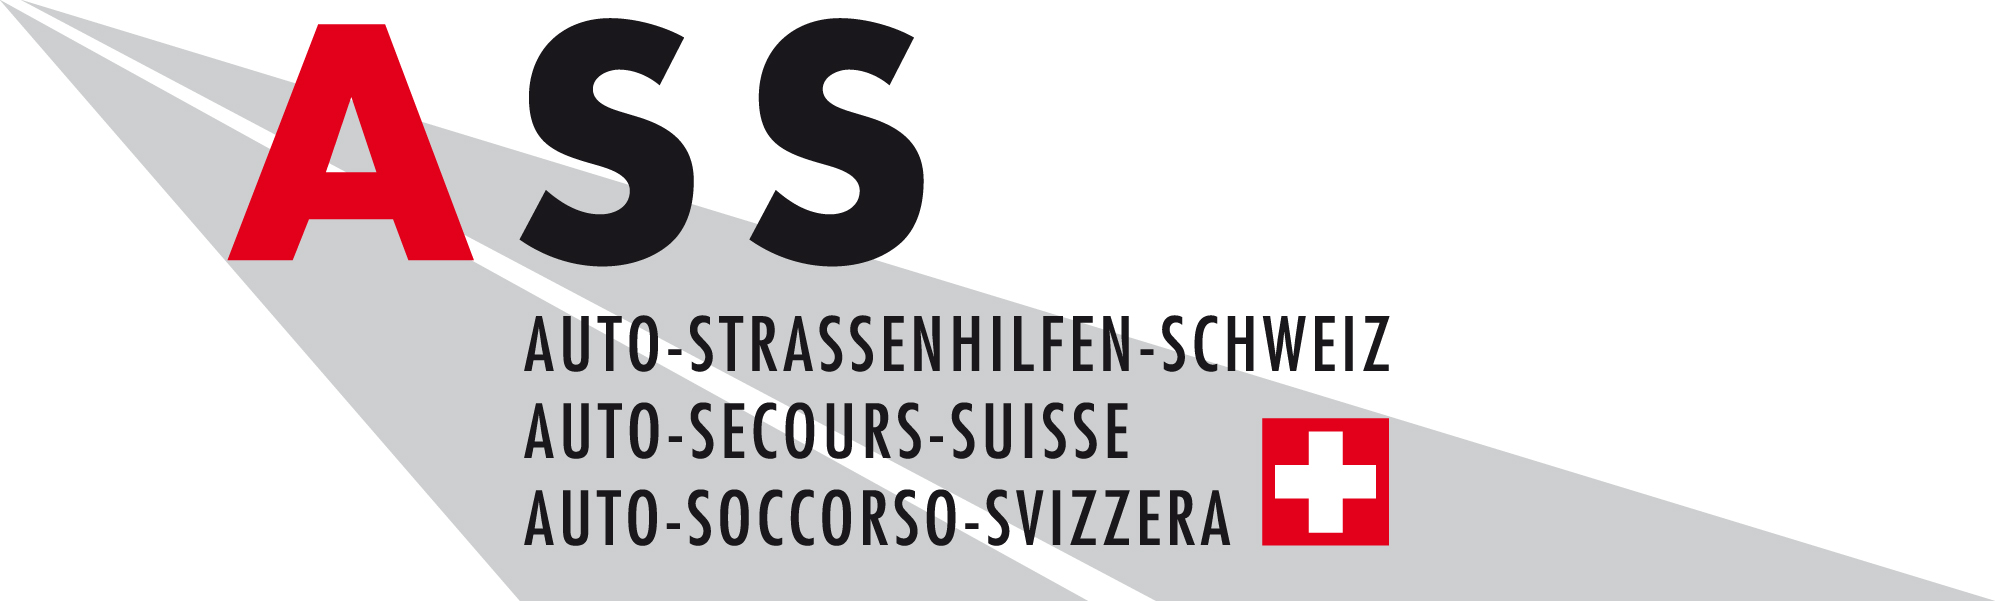 Homepage Verband Auto-Strassenhilfen Schweiz